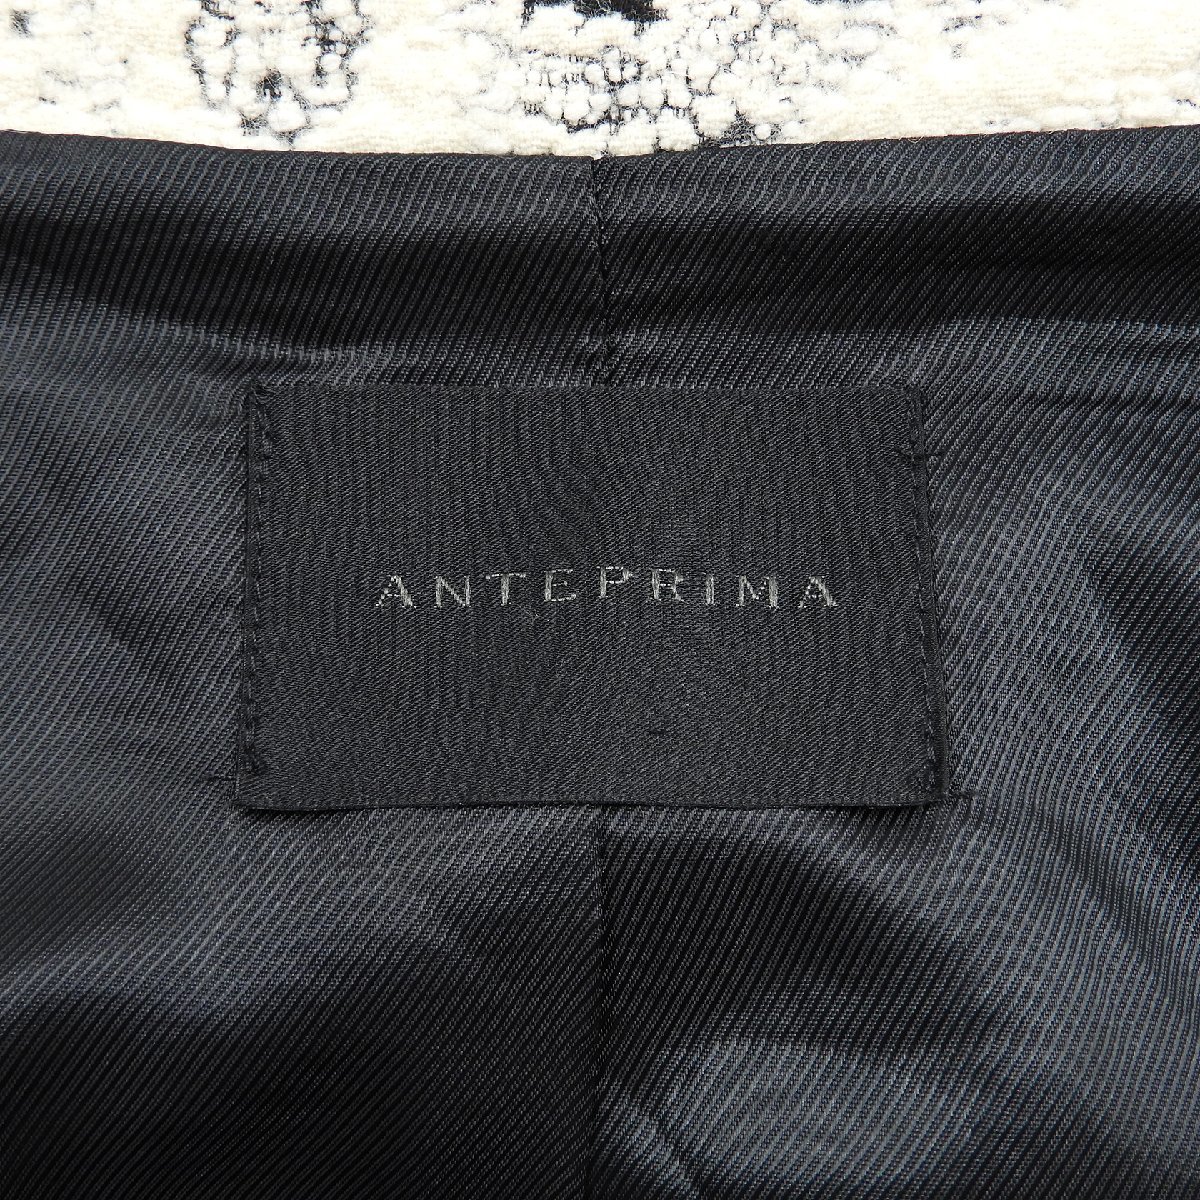 ANTEPRIMA アンテプリマ コート 柄 イタリア製 Size 40 #17144 レディース きれいめ カジュアル_画像3